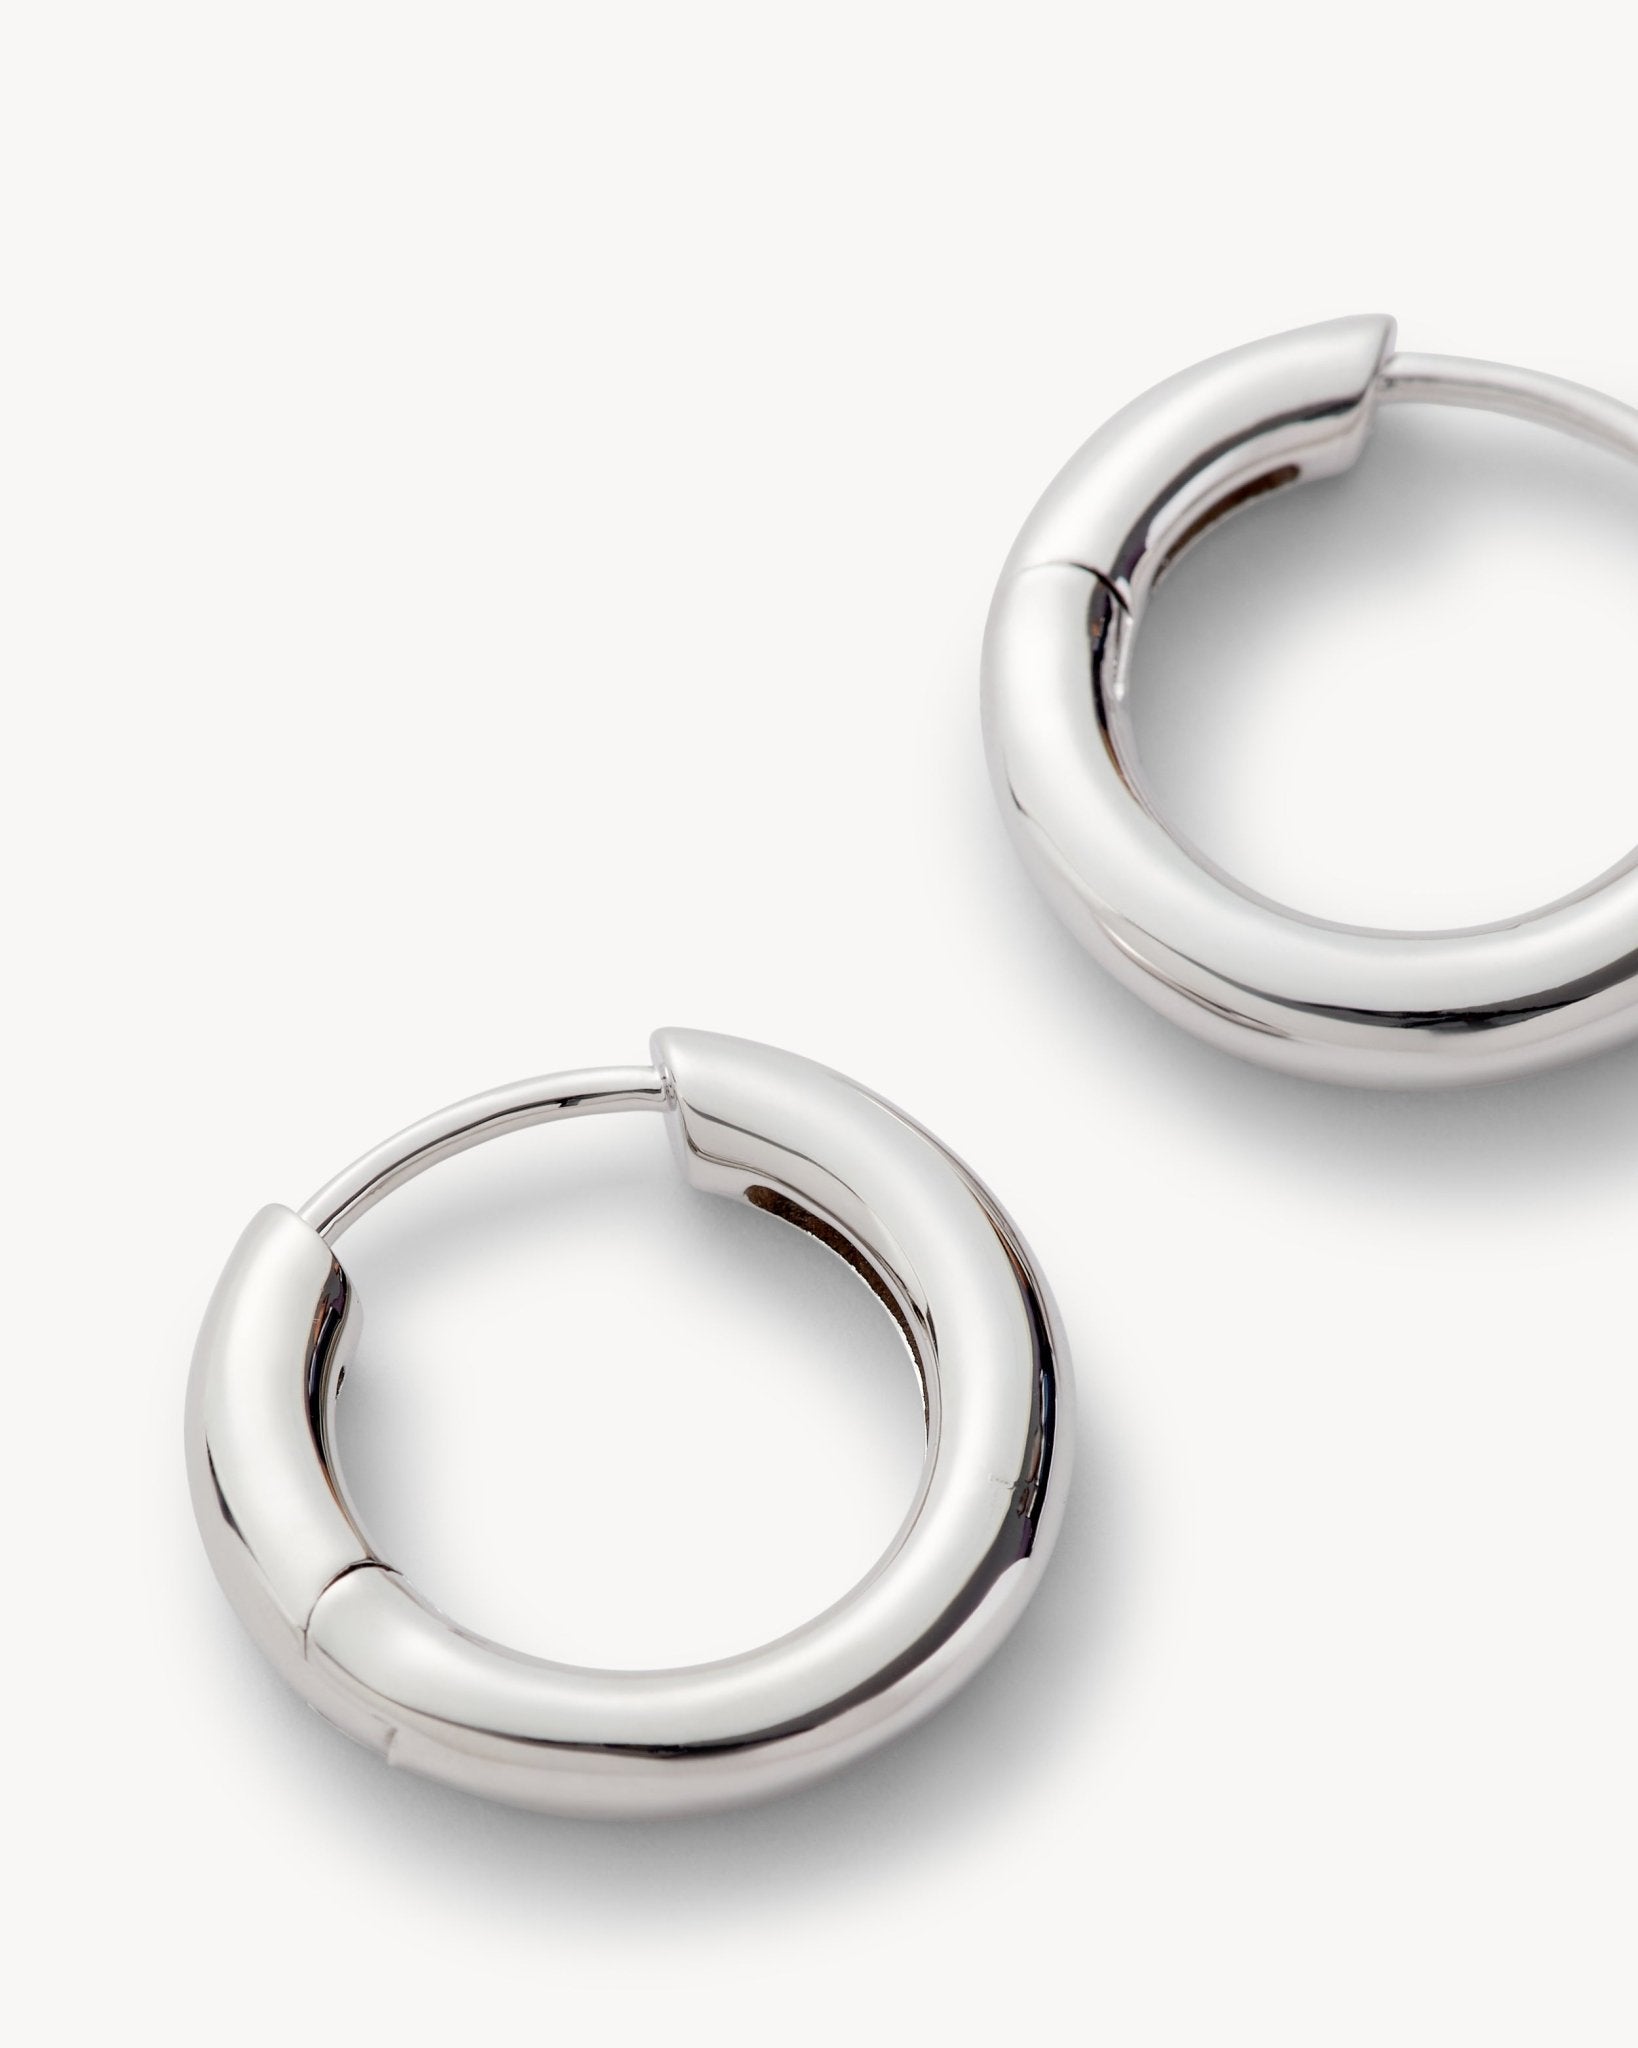 Silver Hinge Hoop Earrings - Machete Jewelry and Accessories – MACHETE